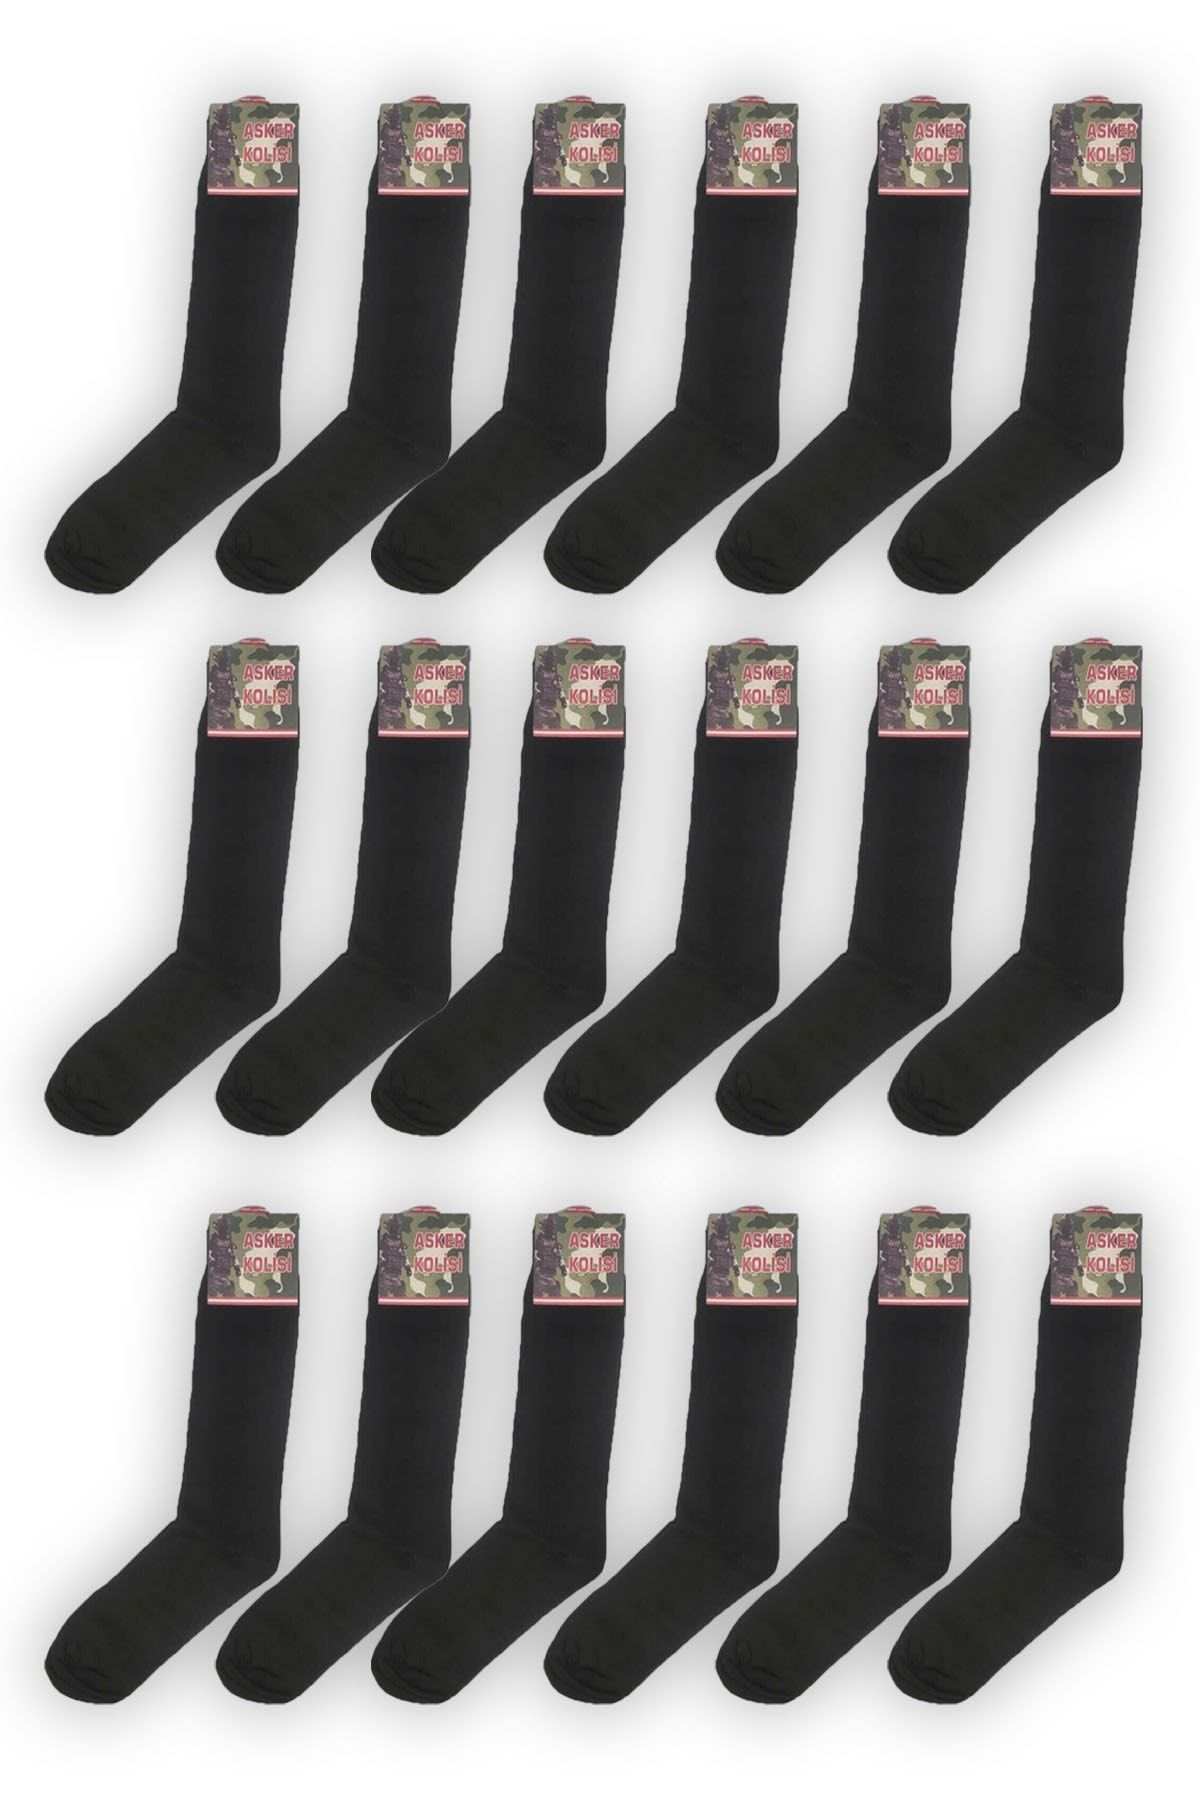 Asker Kolisi 18'li Siyah Asker Çorabı - Havacı Askeri Malzeme - Uzun Çorap